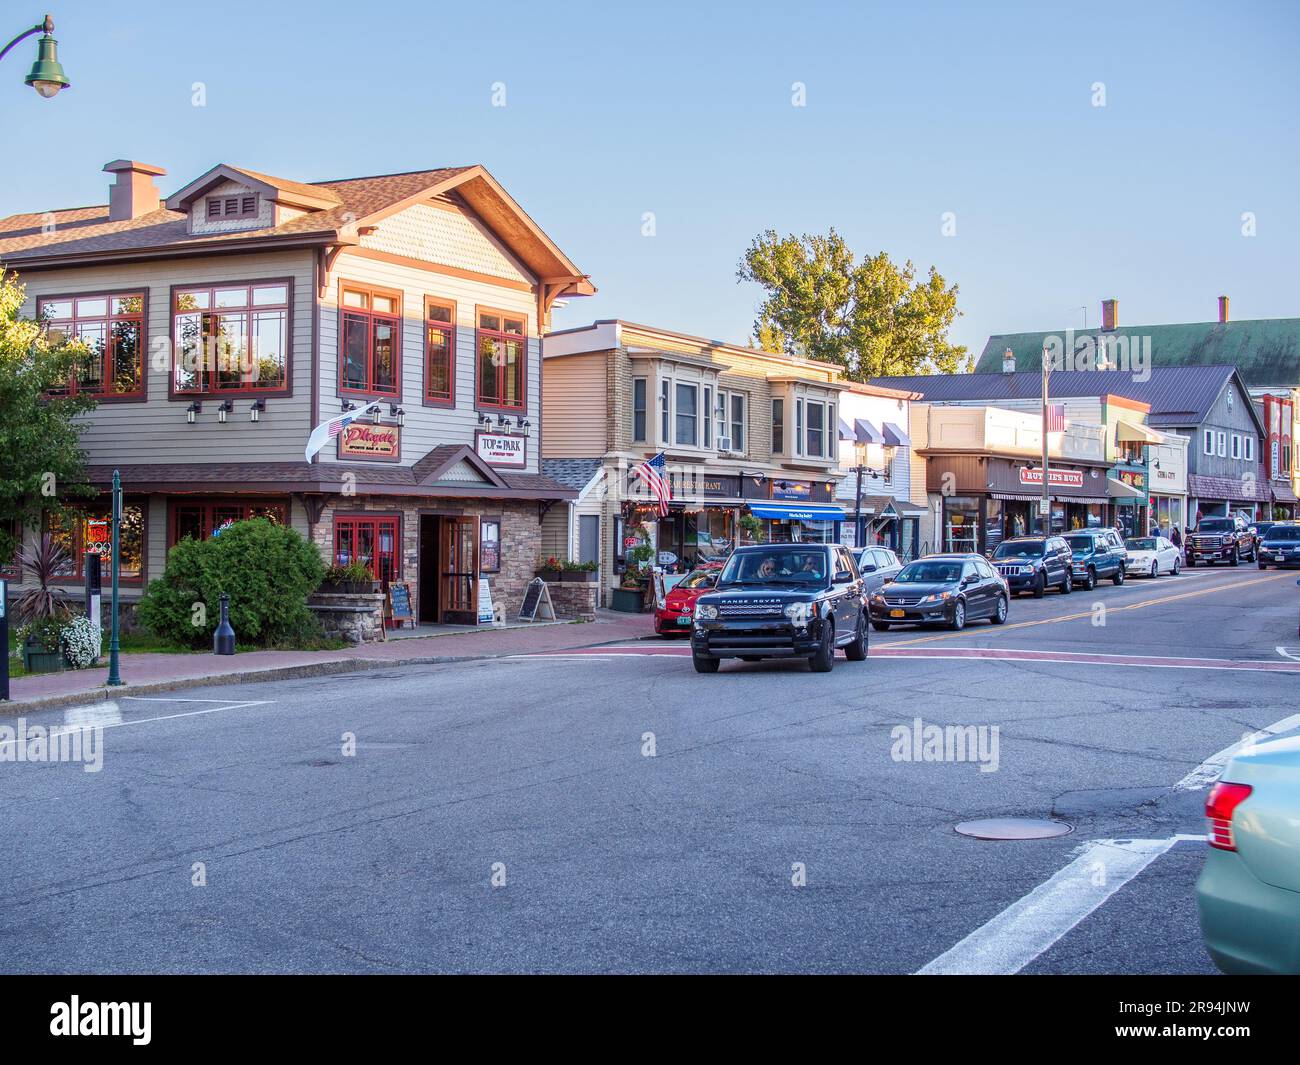 Main Street, situata a Lake Placid nella parte settentrionale dello stato di New York, USA, è il cuore dell'area del centro. Foto Stock